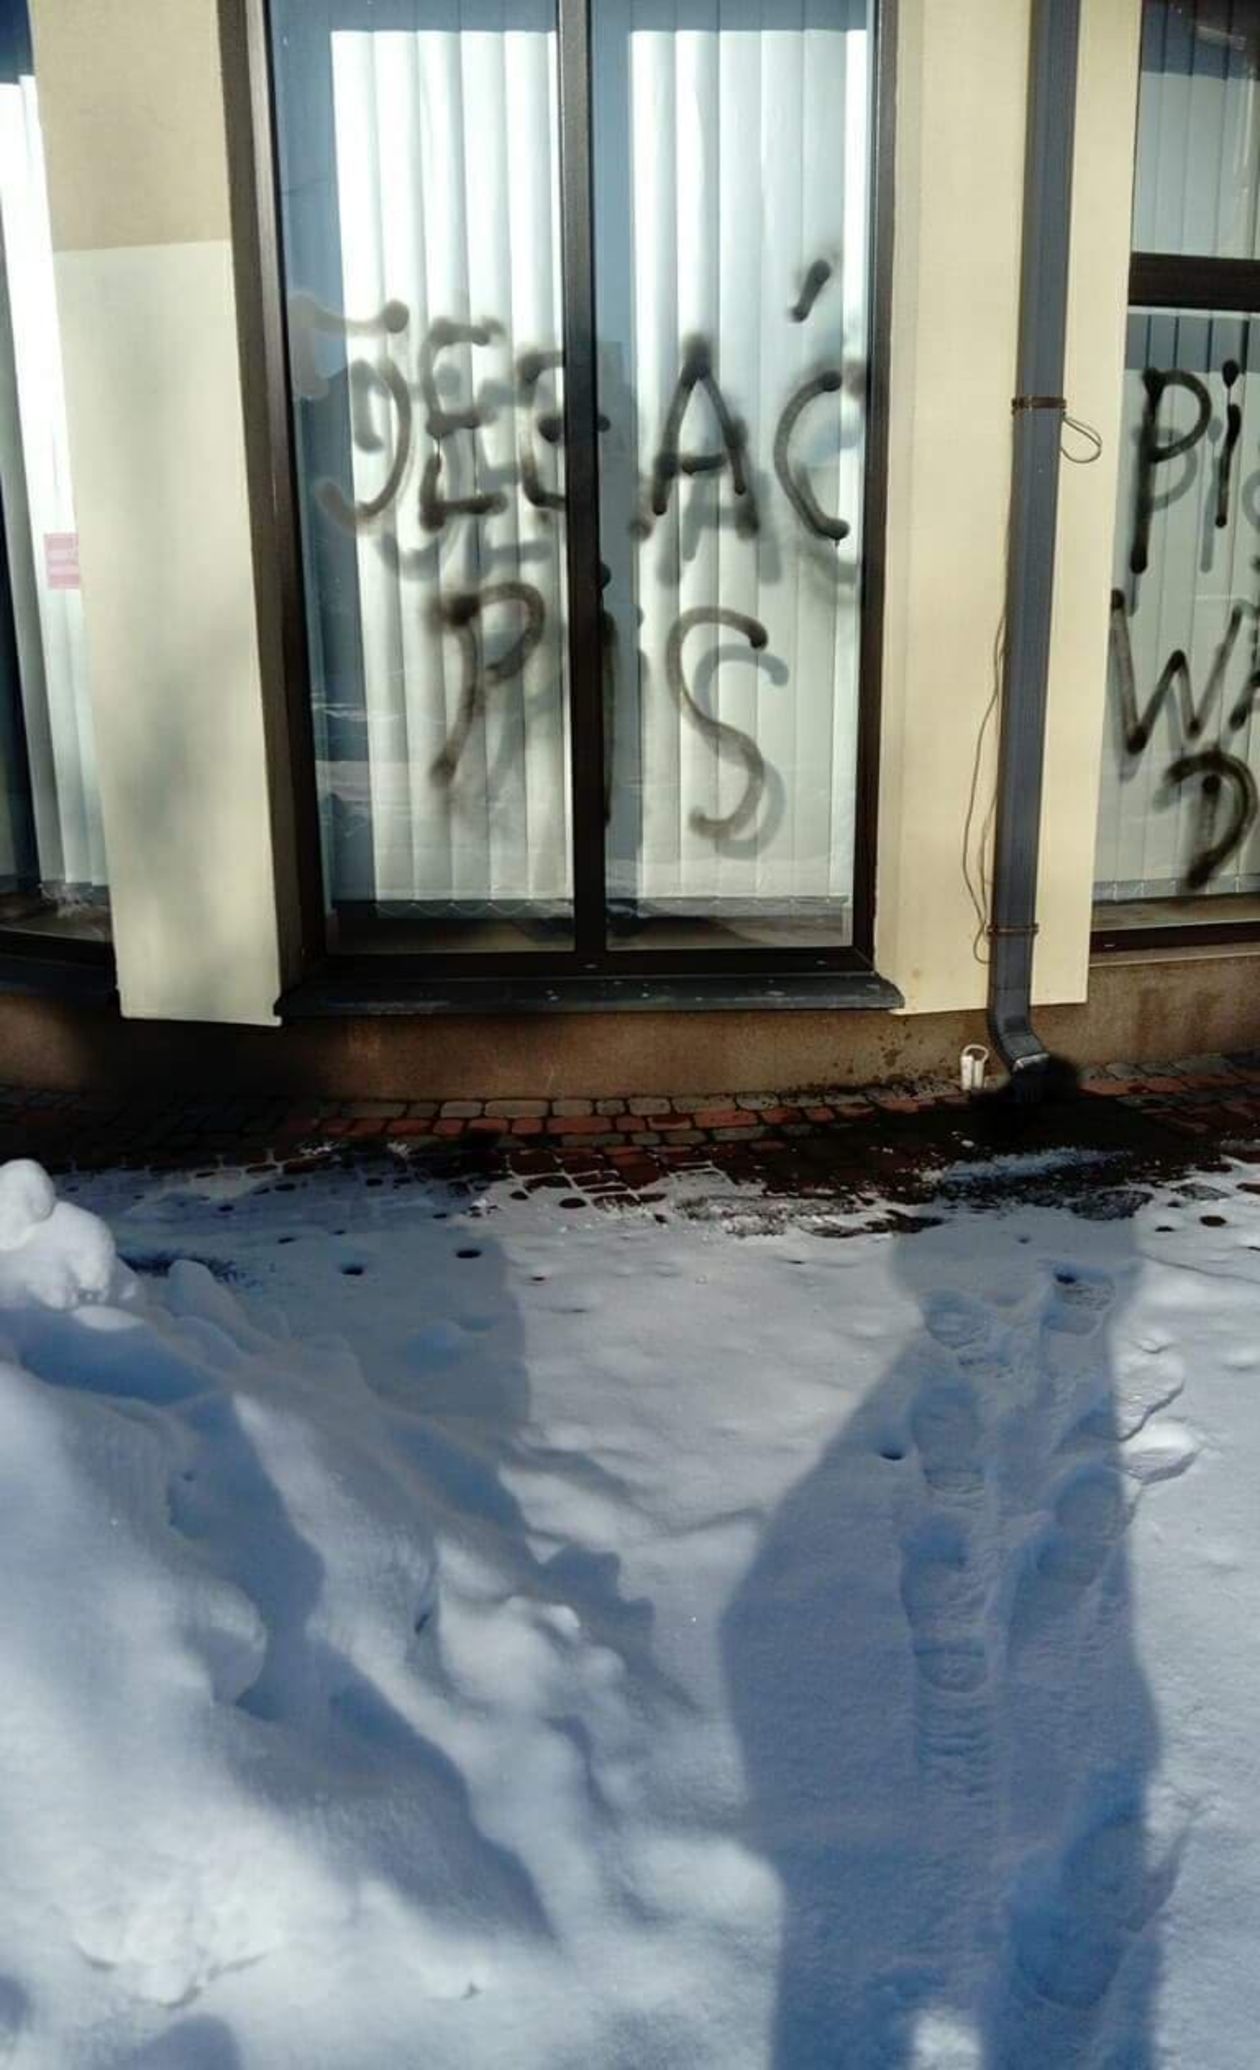  Wandale zaatakowali biuro PiS w Białej Podlaskiej (zdjęcie 1) - Autor: Biuro poselskie